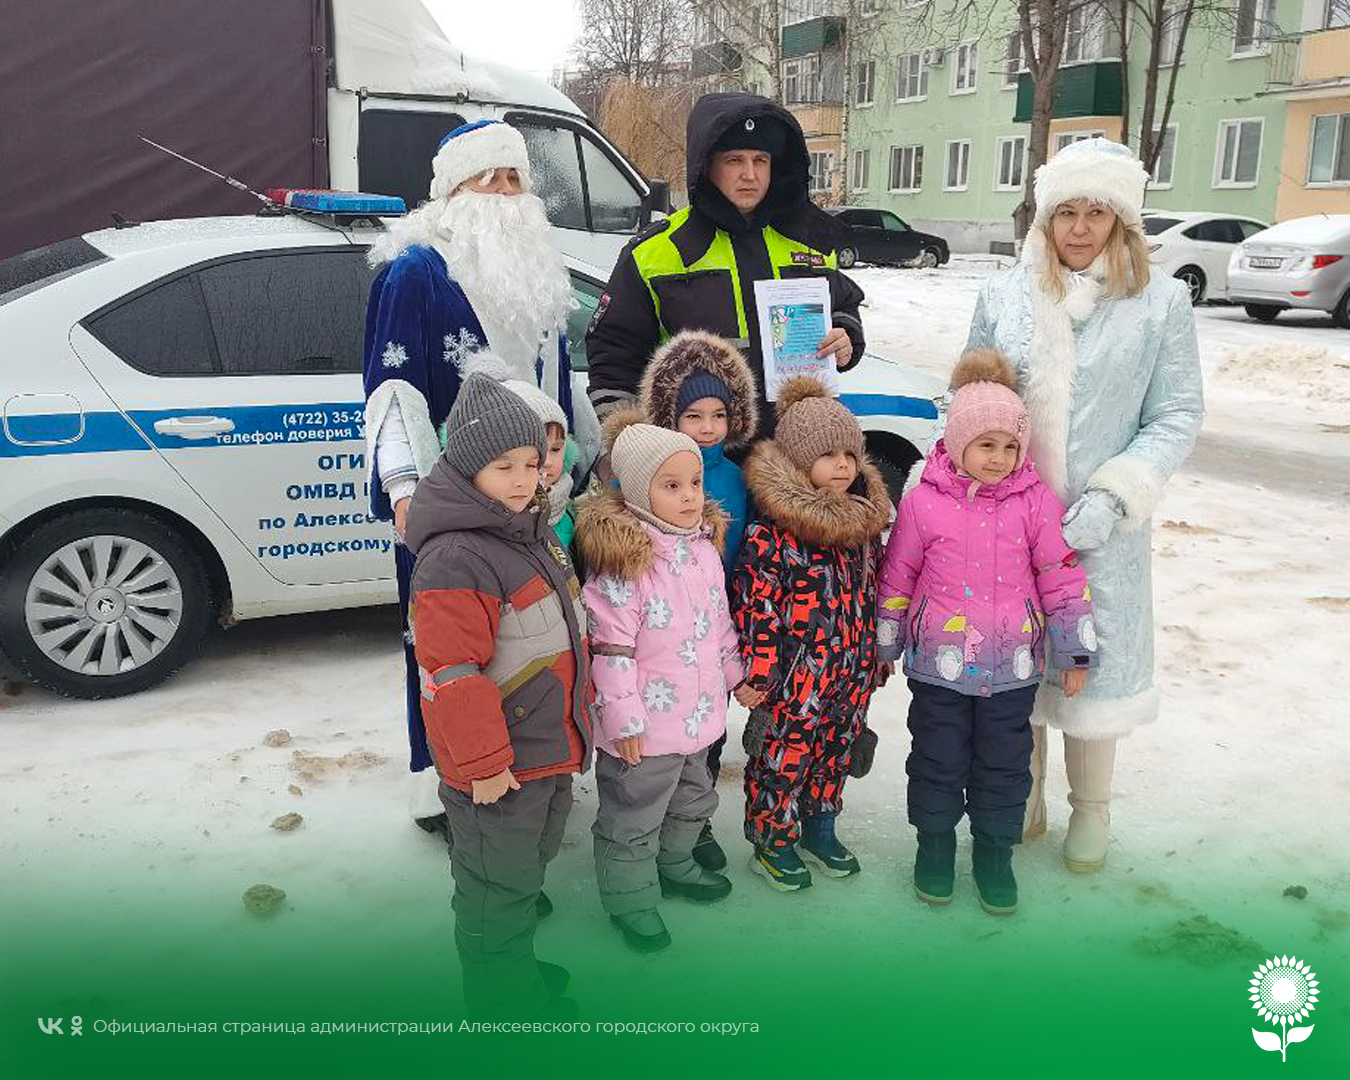 В Алексеевке стартовала предновогодняя акция «Полицейский Дед Мороз» с участием сотрудников Госавтоинспекции  ОМВД России по Алексеевскому городскому округу.